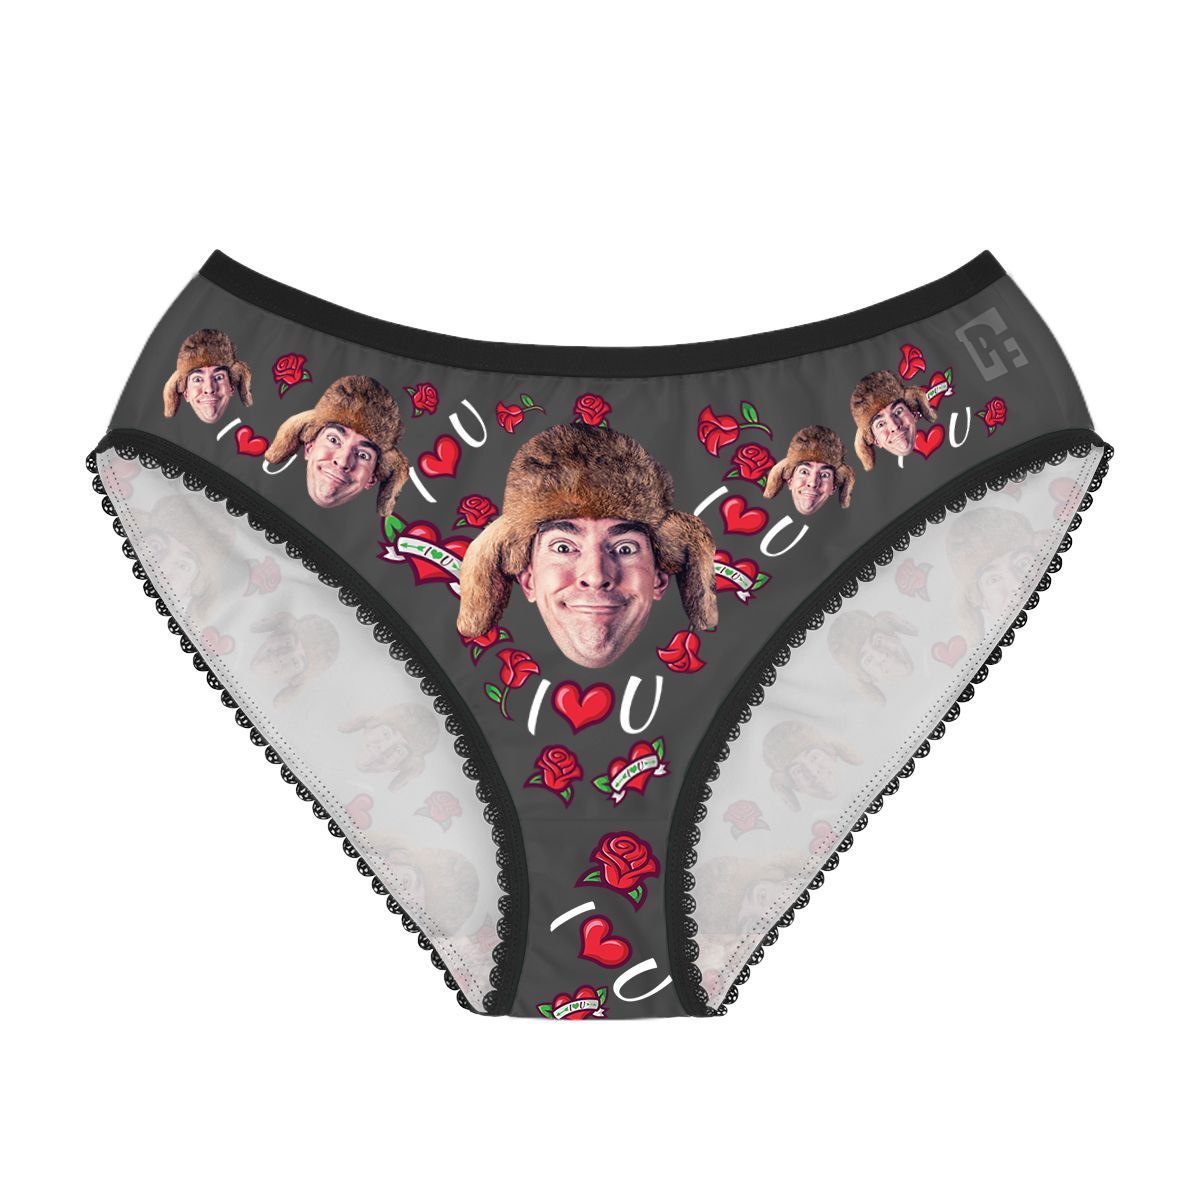 Dark Valentines women's underwear briefs personalized with photo printed on them